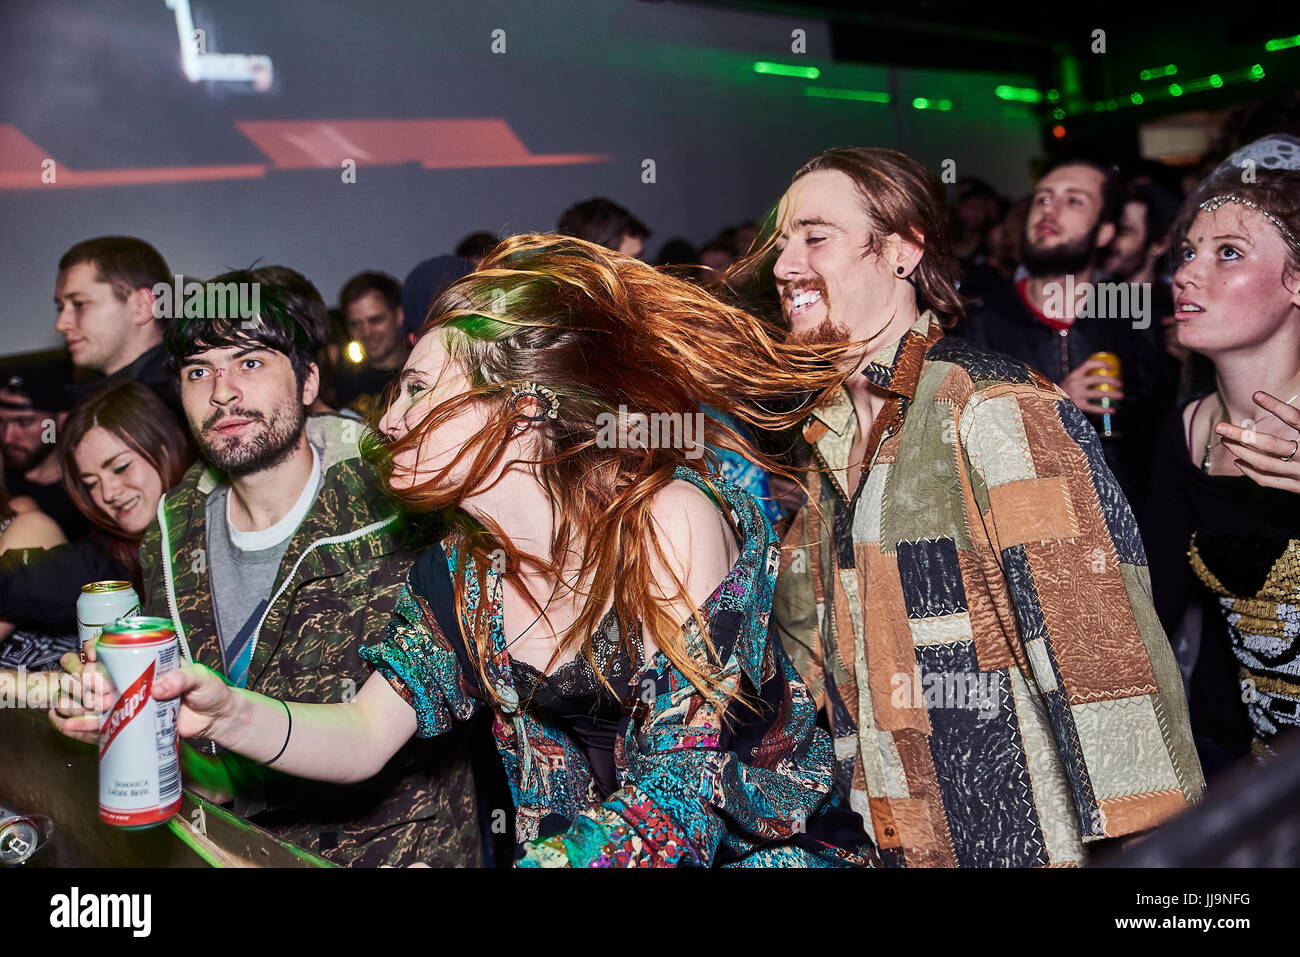 BRISTOL, UK - Dezember 2016: Eine junge, attraktive Frau Haare bedeckt teilweise ihr Gesicht als sie in einer Menschenmenge in einem Nachtclub am 4. Dezember 2016 tanzt Stockfoto